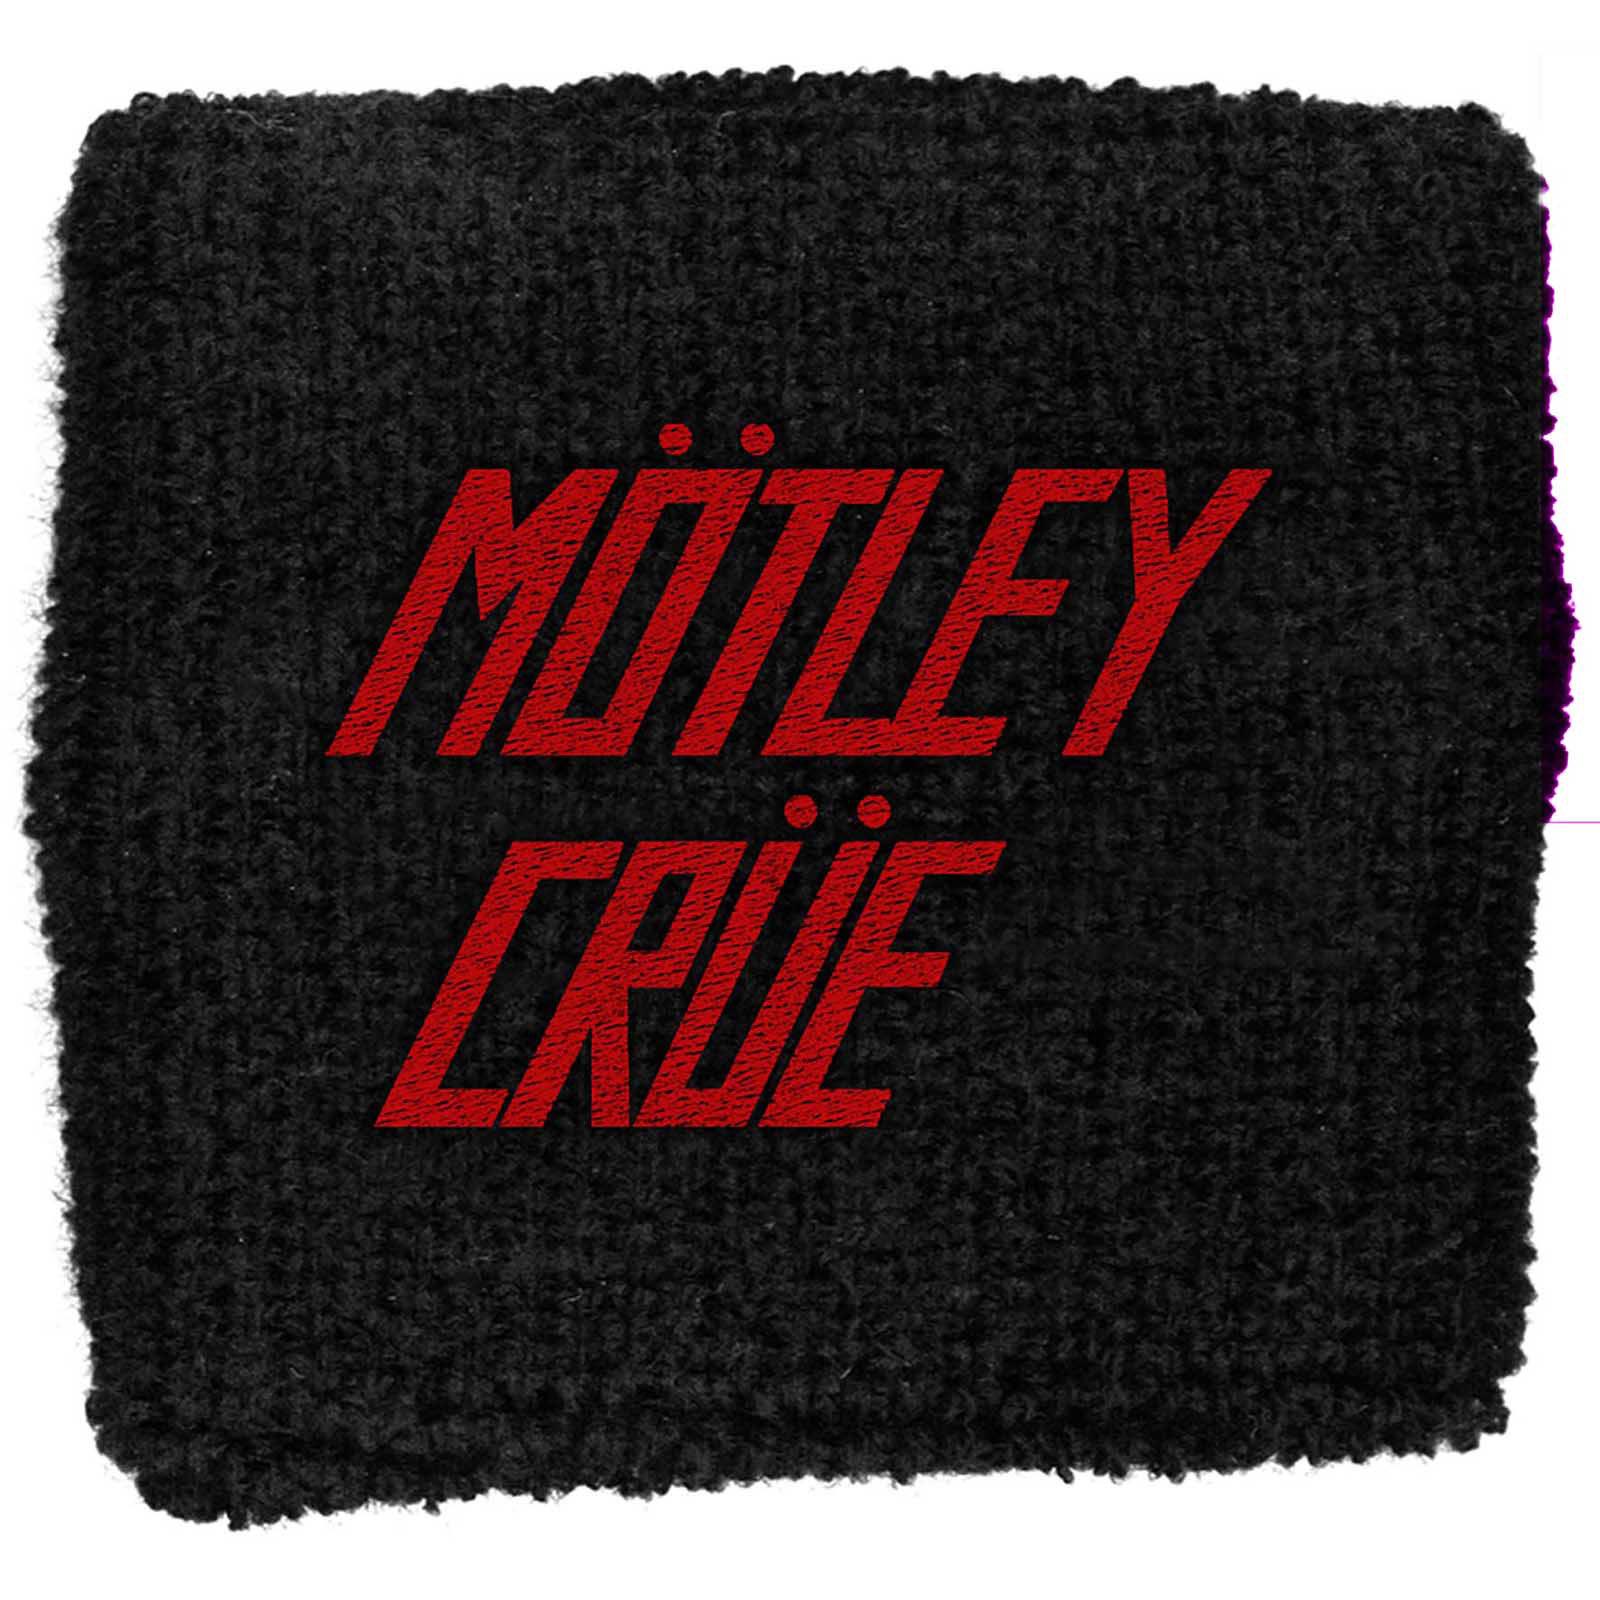 (モトリー・クルー) Motley Crue オフィシャル商品 ロゴ リストバンド 布地 スエットバンド 【海外通販】